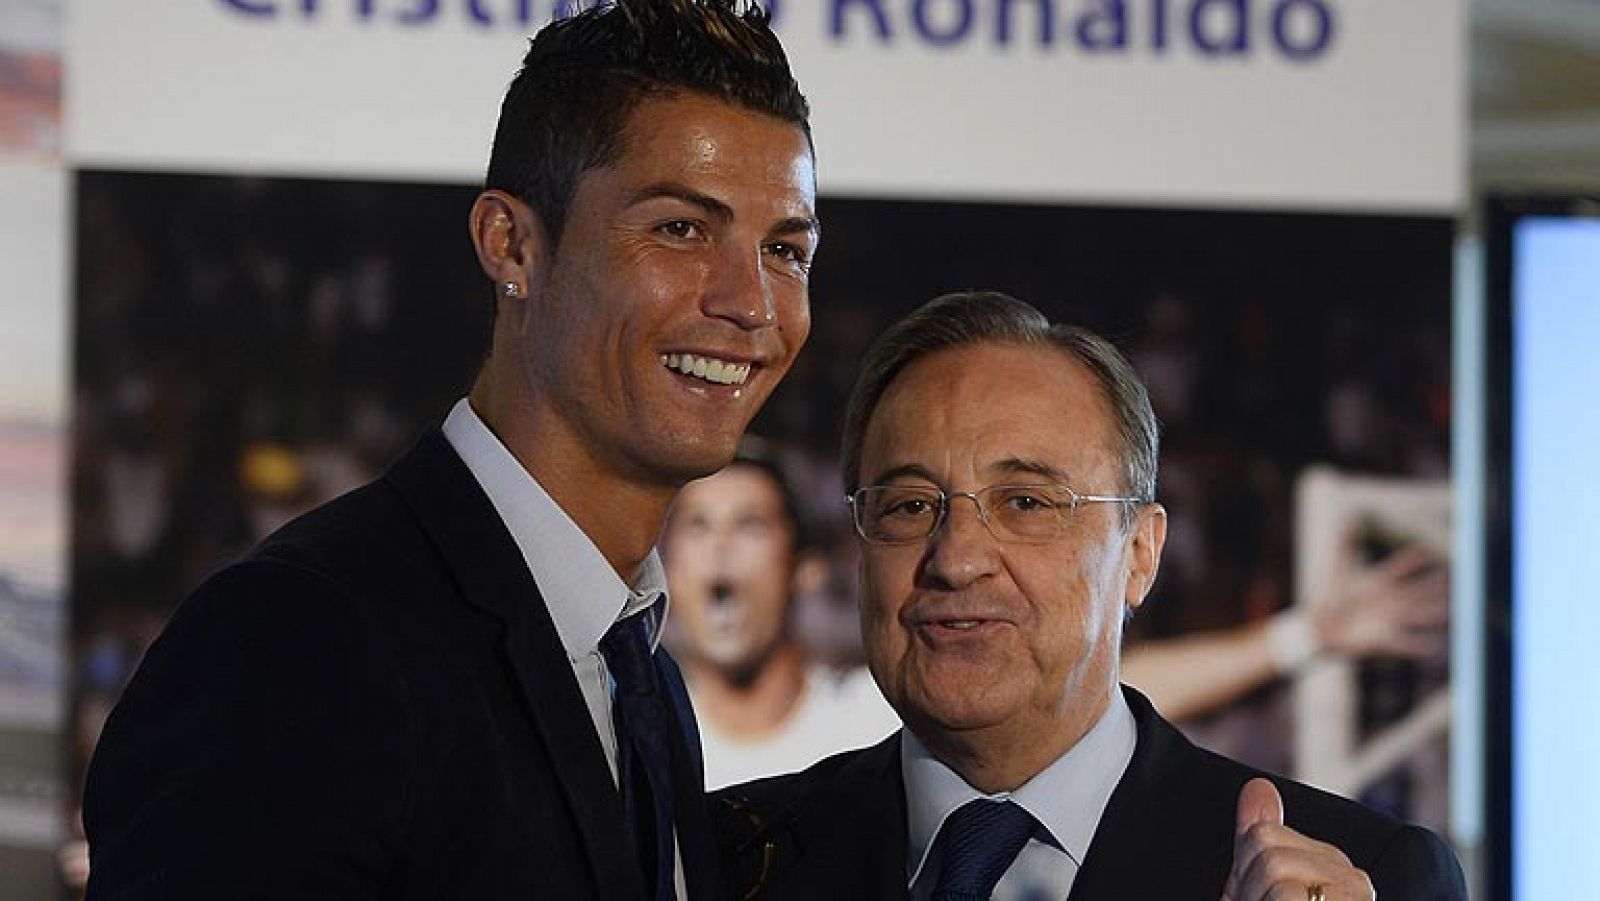 Telediario 1: Cristiano renueva con el Real Madrid hasta 2018 | RTVE Play